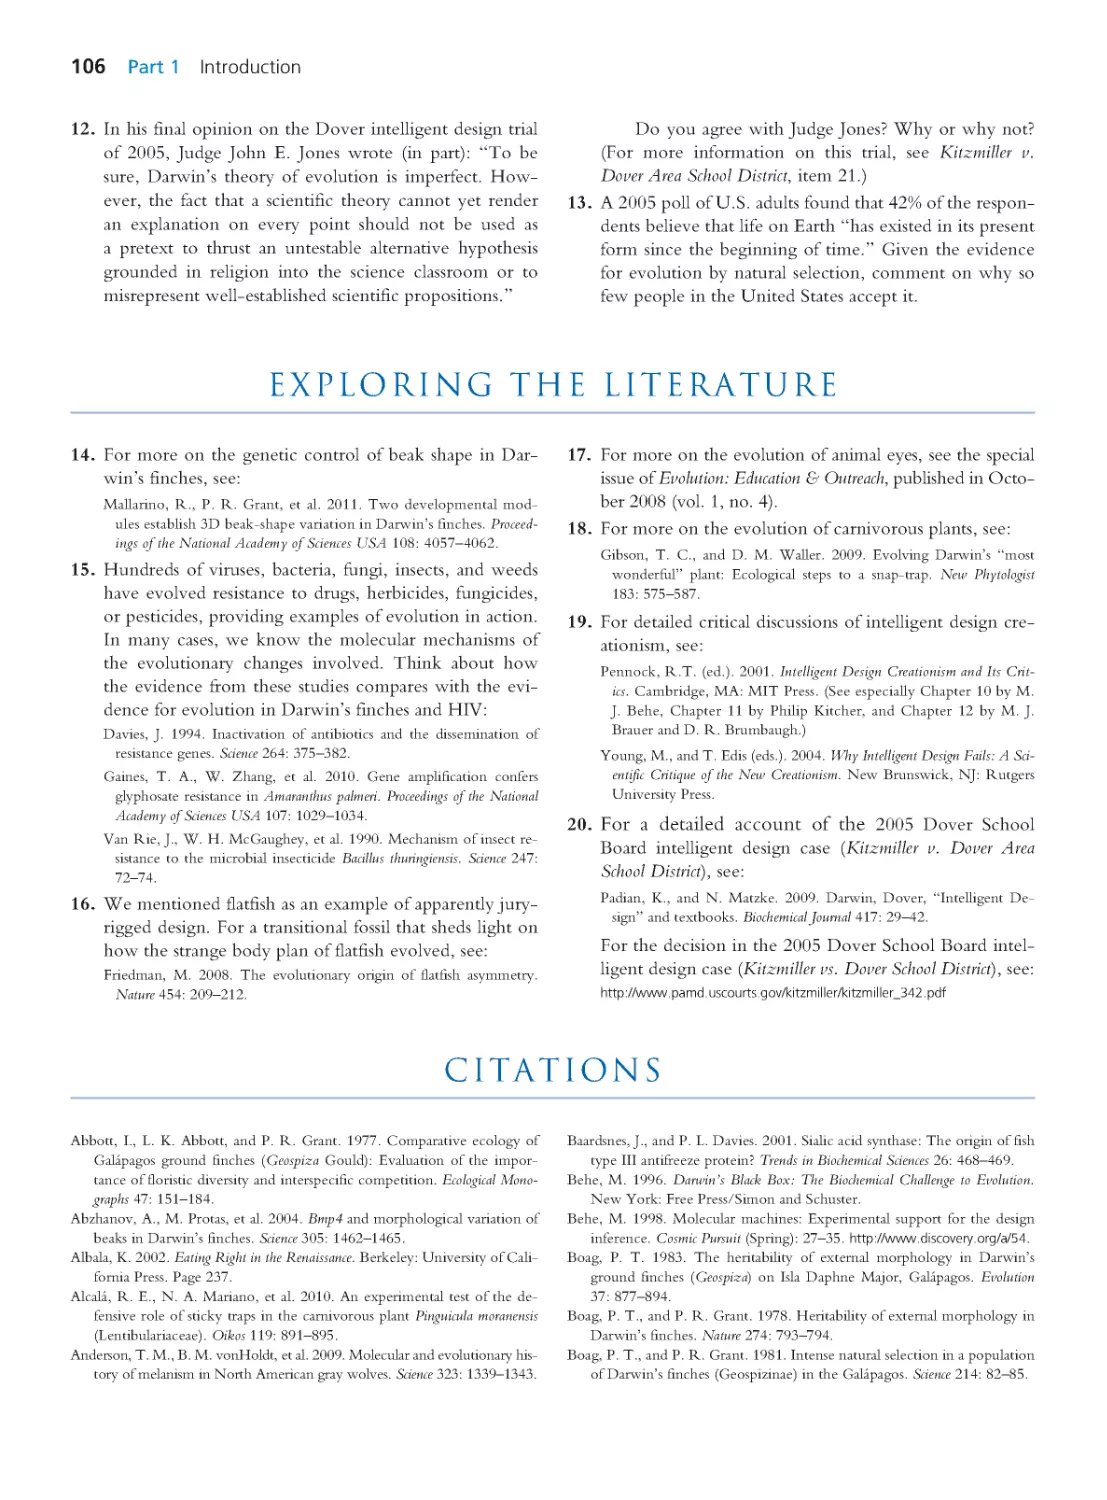 Exploring the Literature
Citations